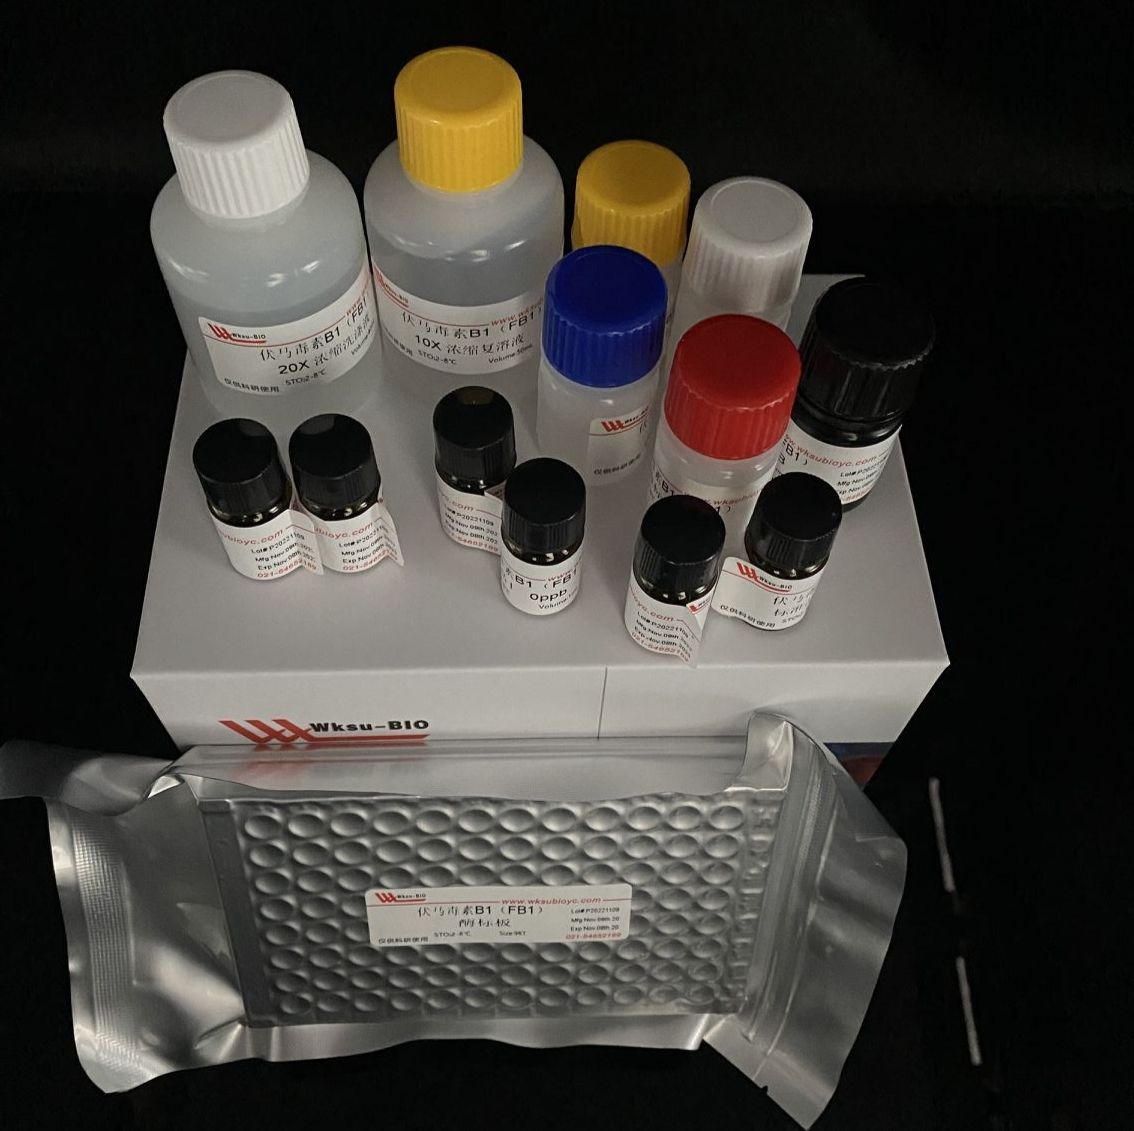 Alanopine脱氢酶 (ADH)活性测定试剂盒,微板法